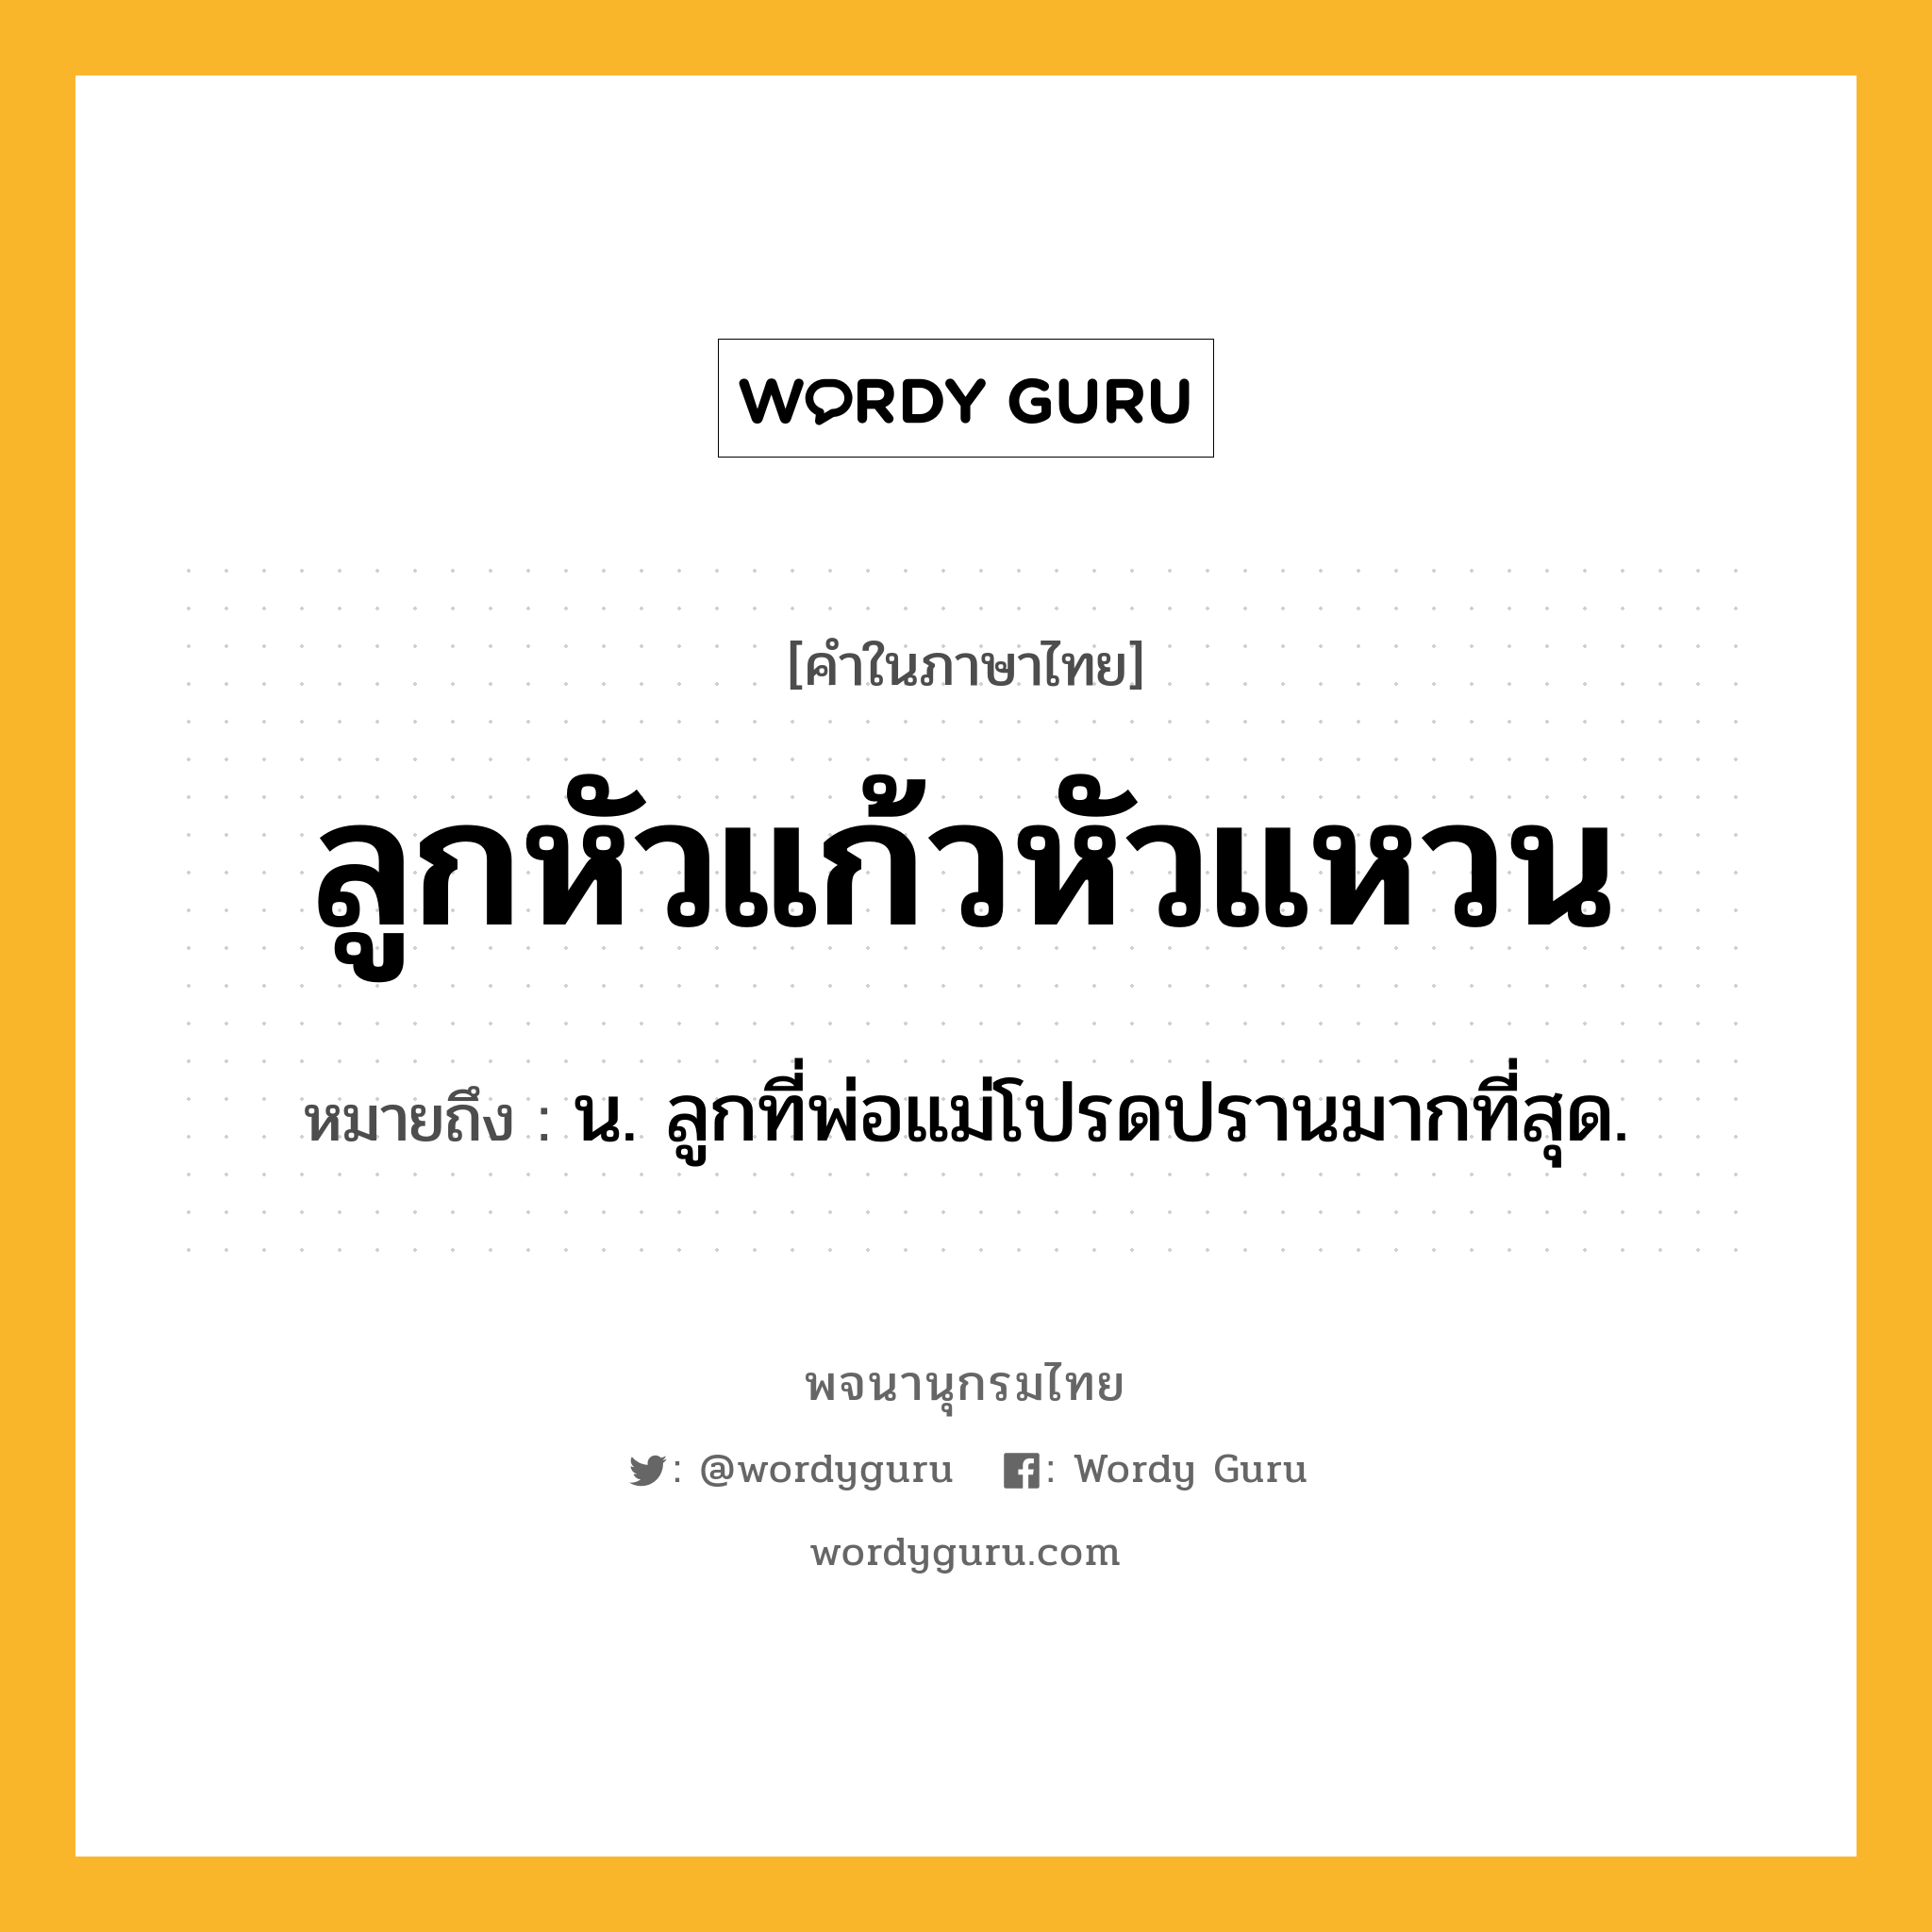 ลูกหัวแก้วหัวแหวน ความหมาย หมายถึงอะไร?, คำในภาษาไทย ลูกหัวแก้วหัวแหวน หมายถึง น. ลูกที่พ่อแม่โปรดปรานมากที่สุด.